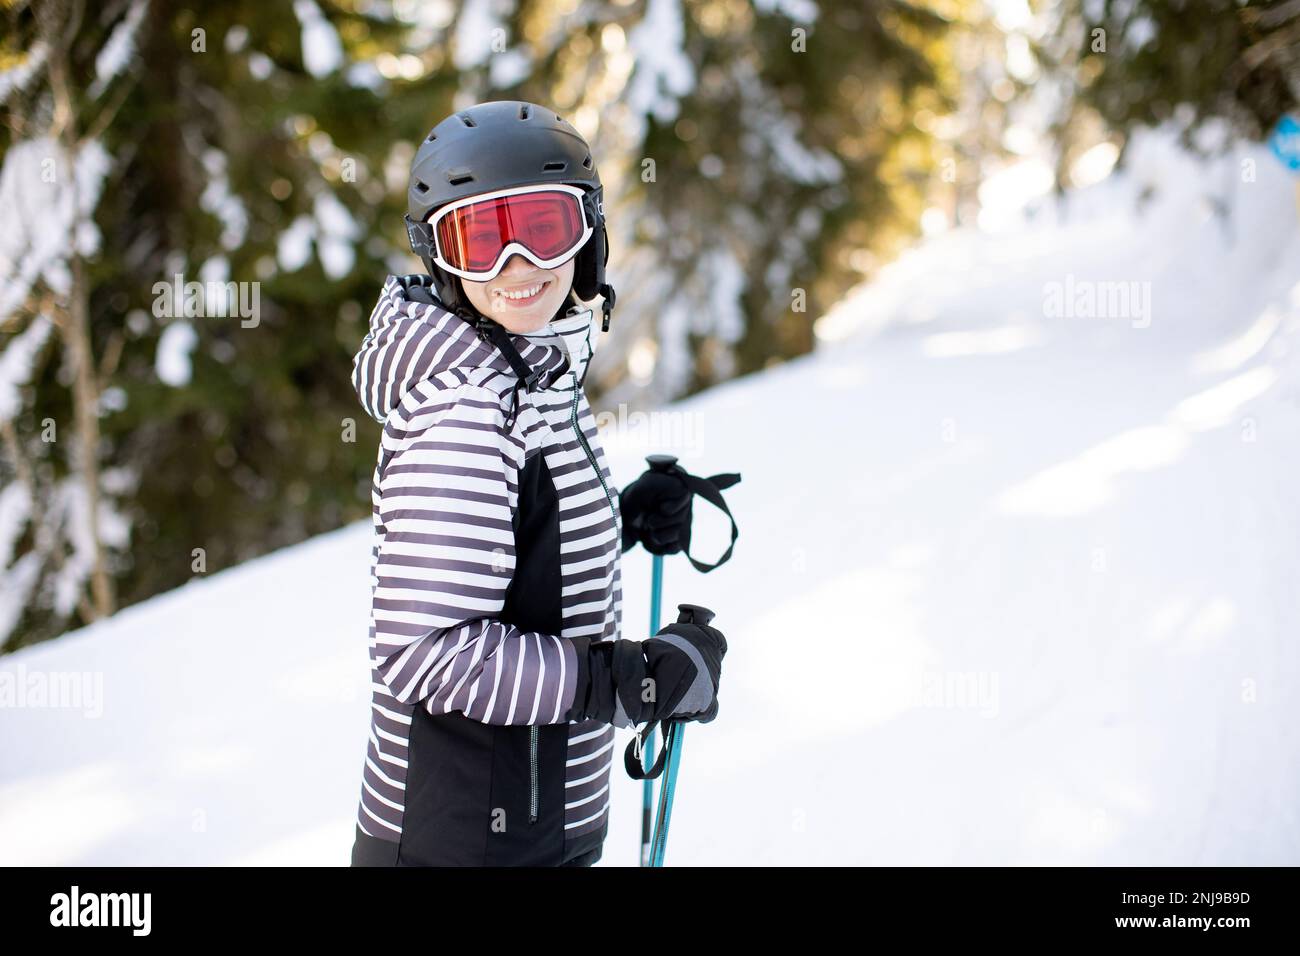 Jeune femme qui profite de la journée d'hiver pour skier sur les pistes enneigées, entourée de grands arbres et habillée pour les températures froides Banque D'Images